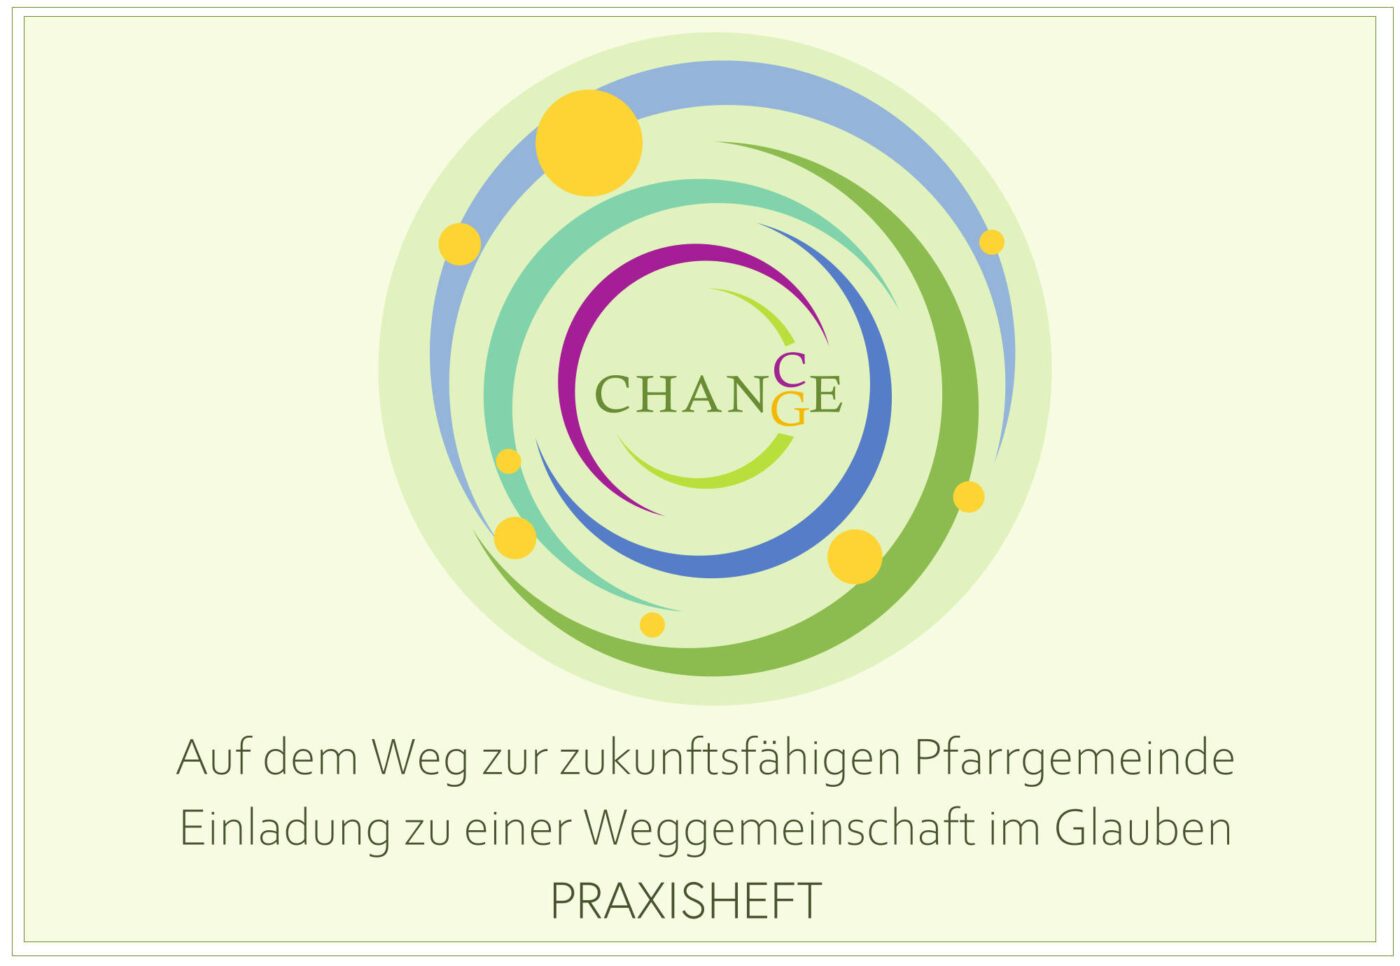 Das aktualisierte Praxisheft bietet eine Fülle an konkreten Maßnahmen zum Umwelt- und Klimaschutz. (Grafik: Evangelische Kirche in Österreich)